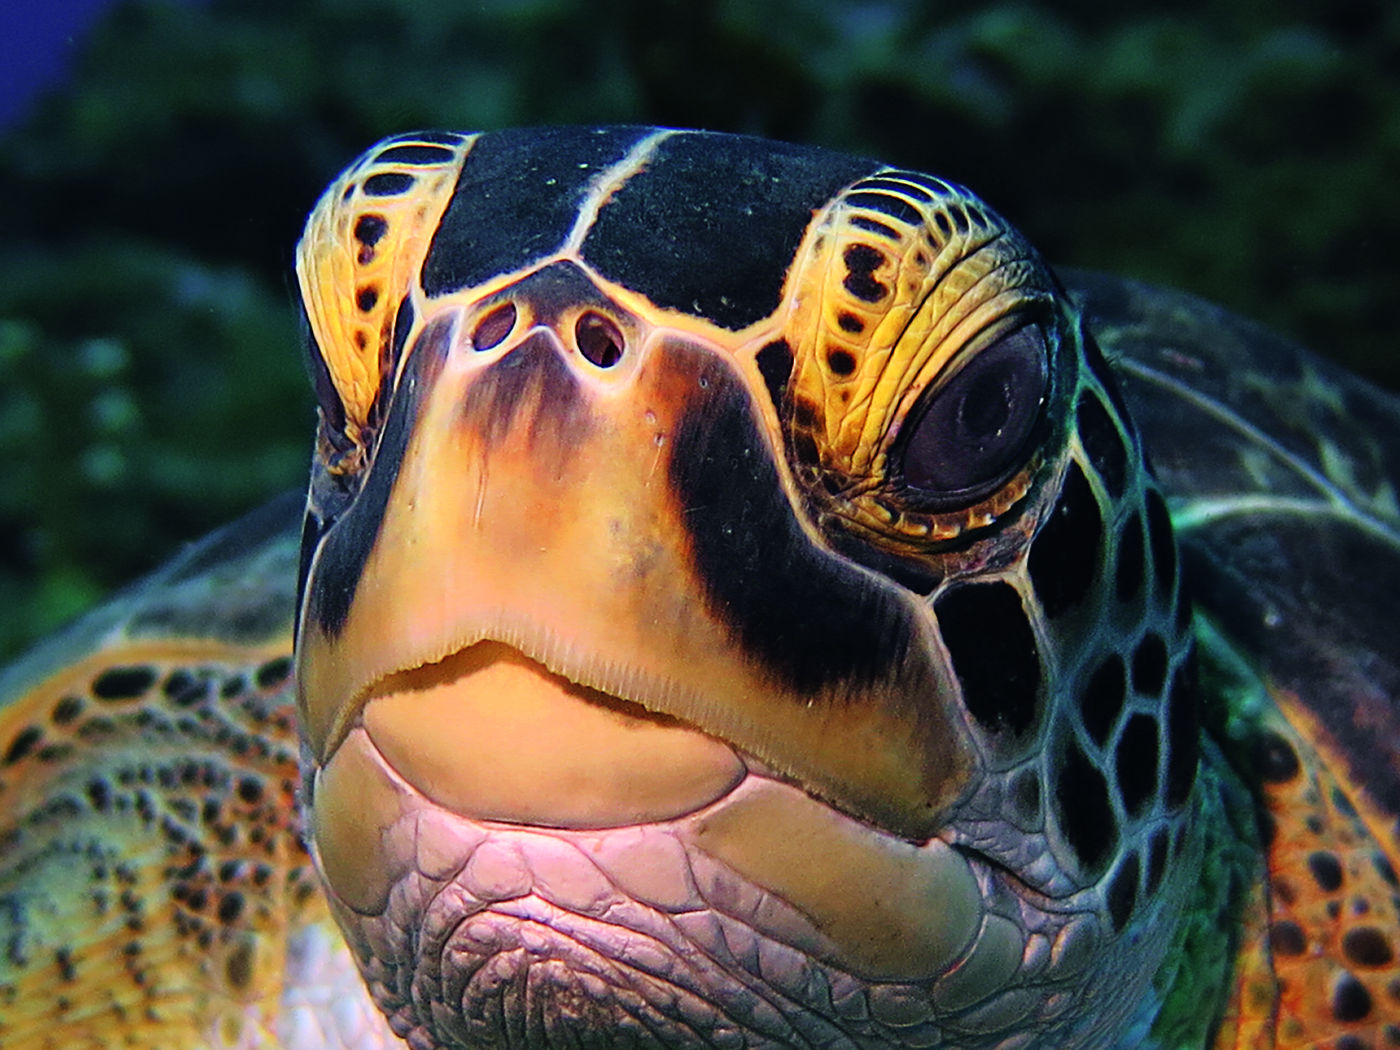 Traumhafte Unterwasserwelt um Statia: Schildkröten werden dort häufig angetroffen.